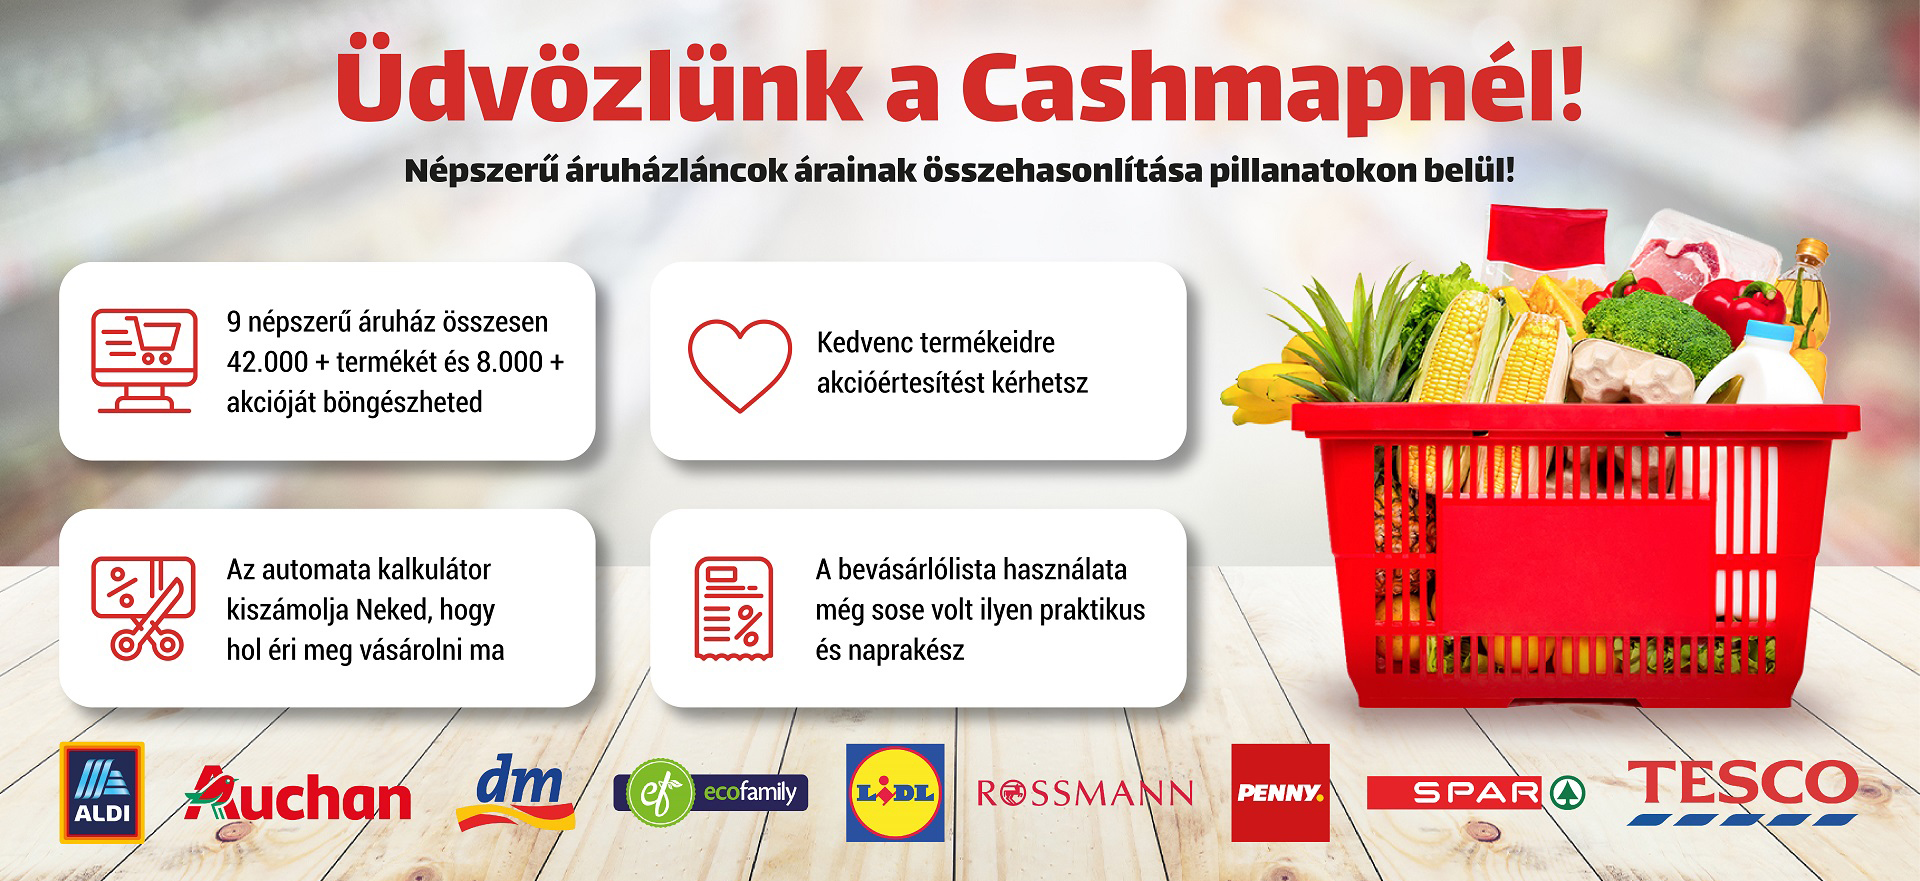 Üdvözlünk a Cashmapnél!